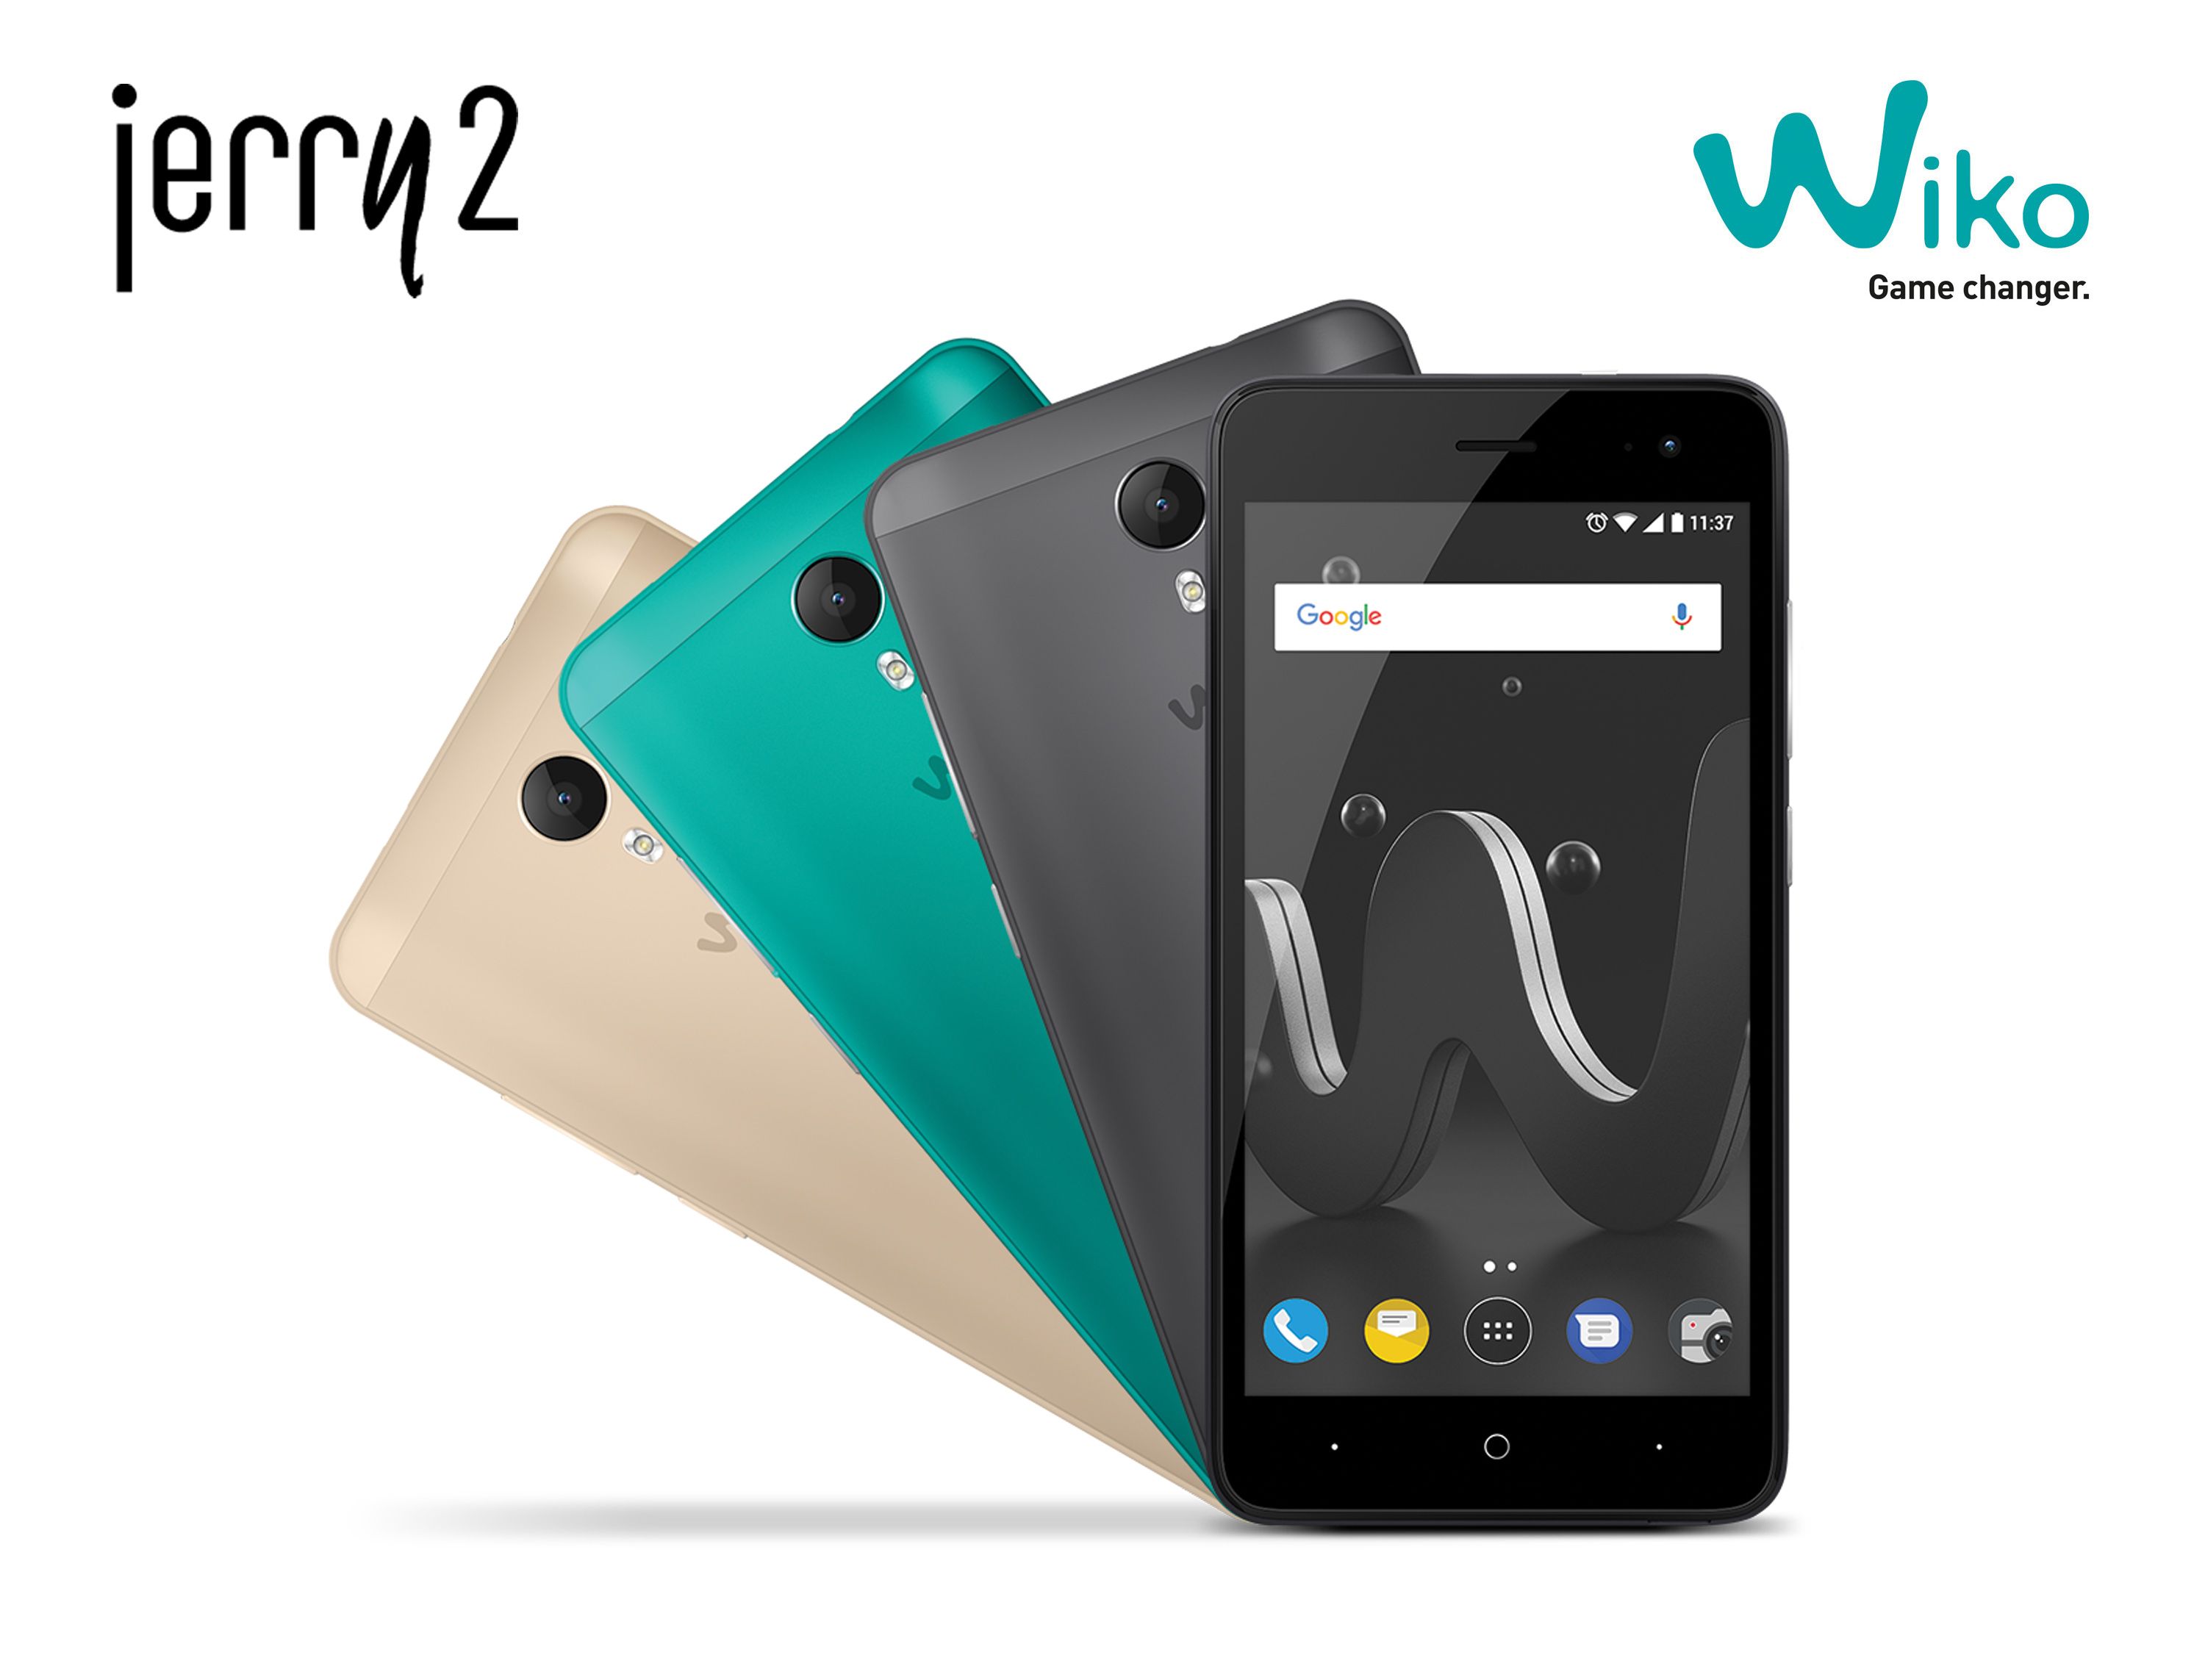 น้องใหม่ Wiko Jerry 2 มือถือ Android 7.0 ฟังค์ชั่นครบ ในราคาสุดคุ้มเพียง 2,490 บาท